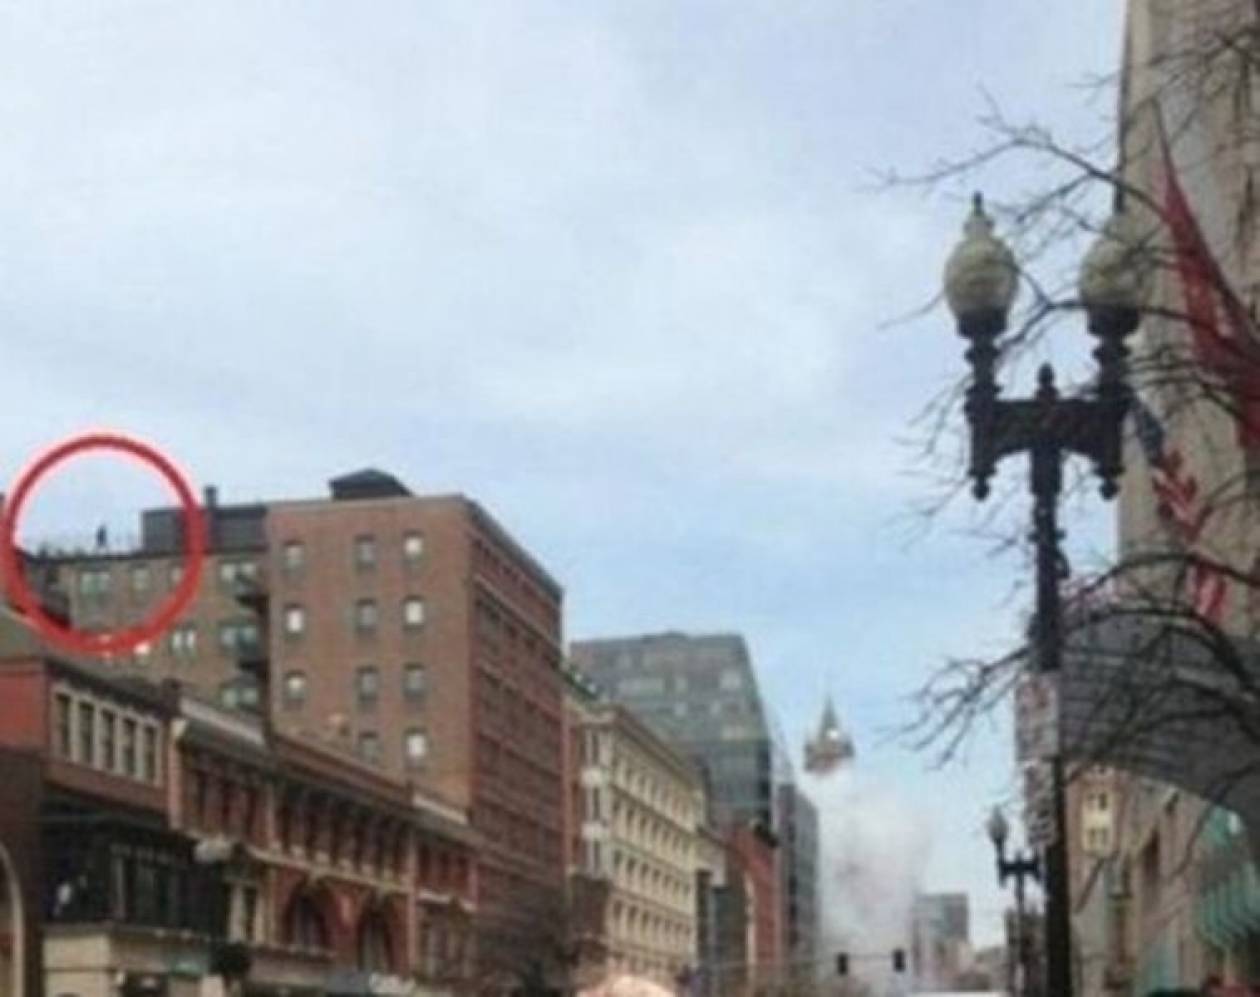 Nτοκουμέντο: To FBI αναζητά τον άνδρα σε οροφή κτηρίου στη Βοστώνη